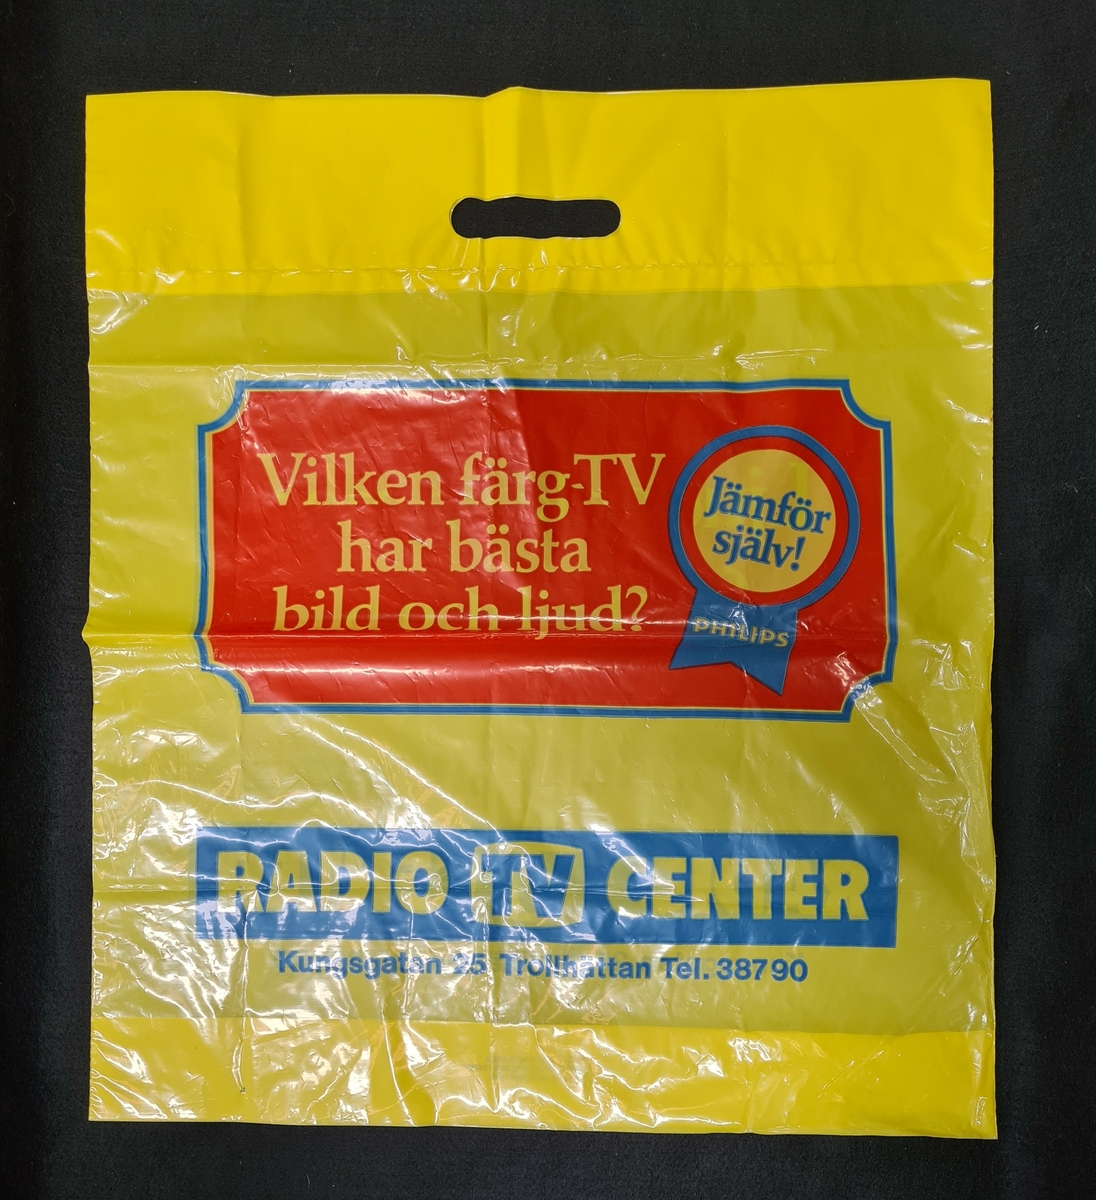 Plastkasse, gul, med logga från Radio TV center i Trollhättan. 

På kassen står:
Vilken färg-TV har bäst bild och ljus?
Jämför själv!
Philips
 
Radio TV center
Kungsgatan 25 Trollhättan Tel. 38790